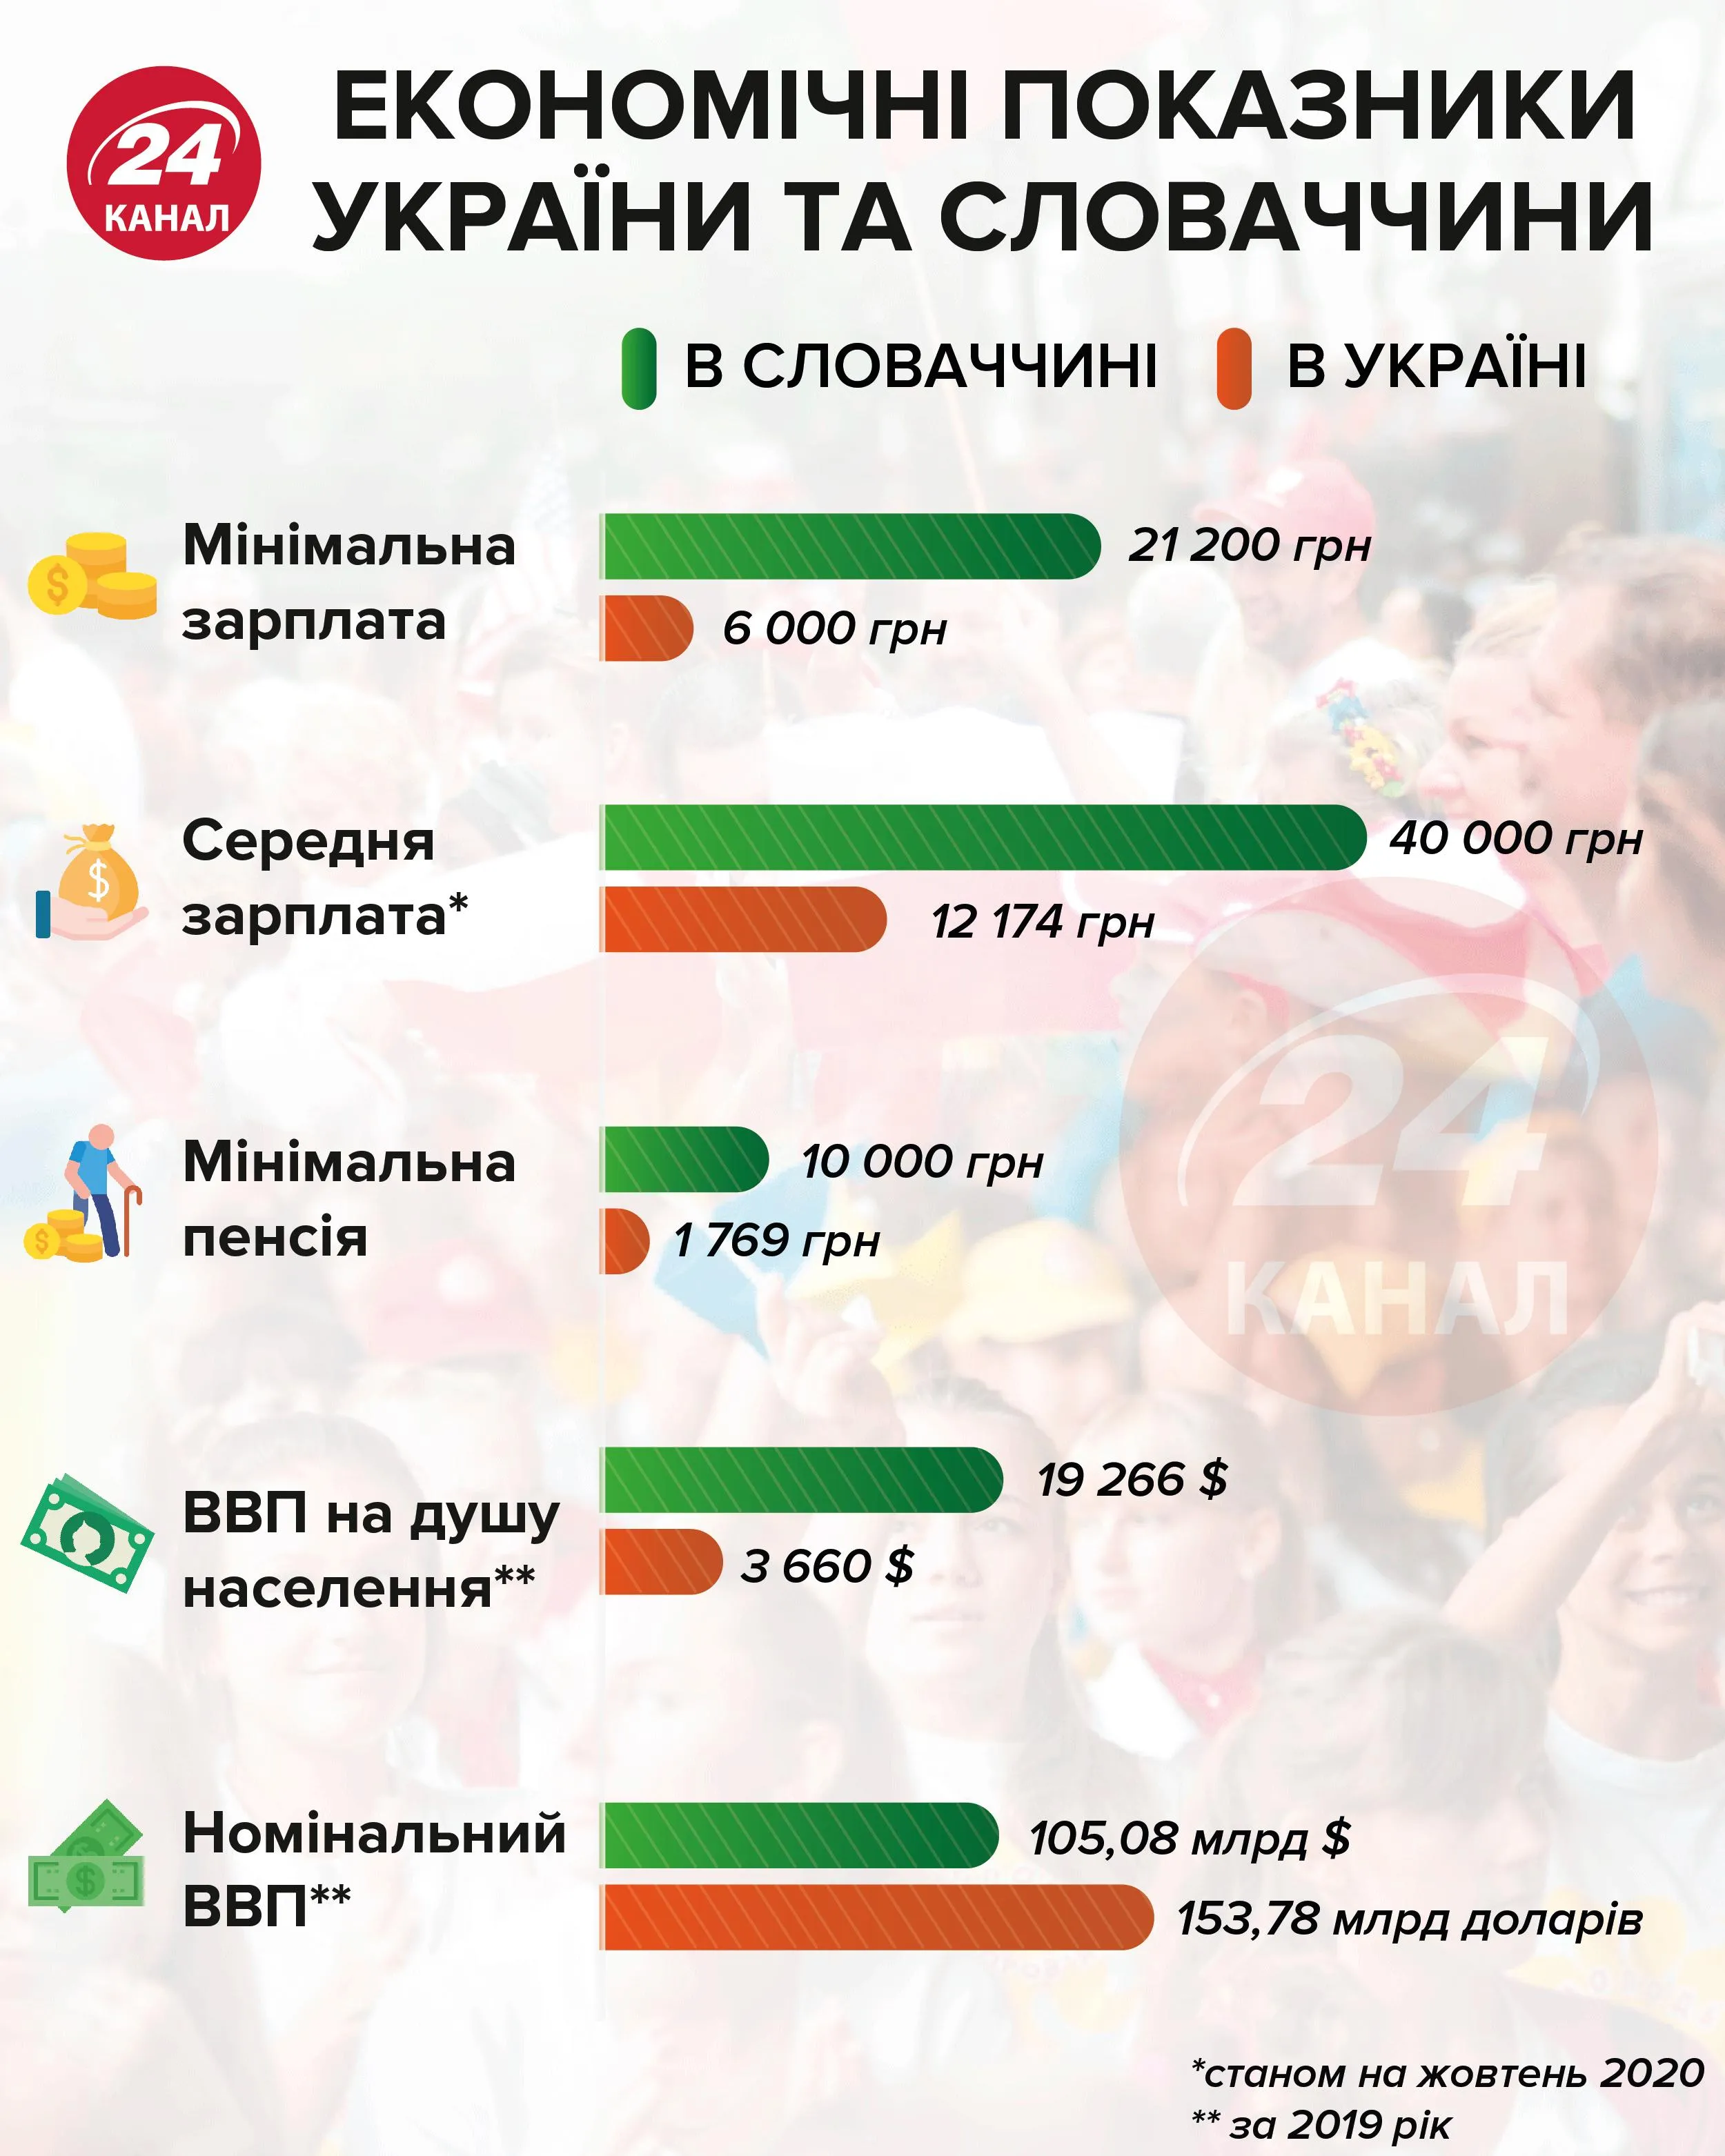 Экономические показатели Украины и Словакии  Инфографика 24 канала